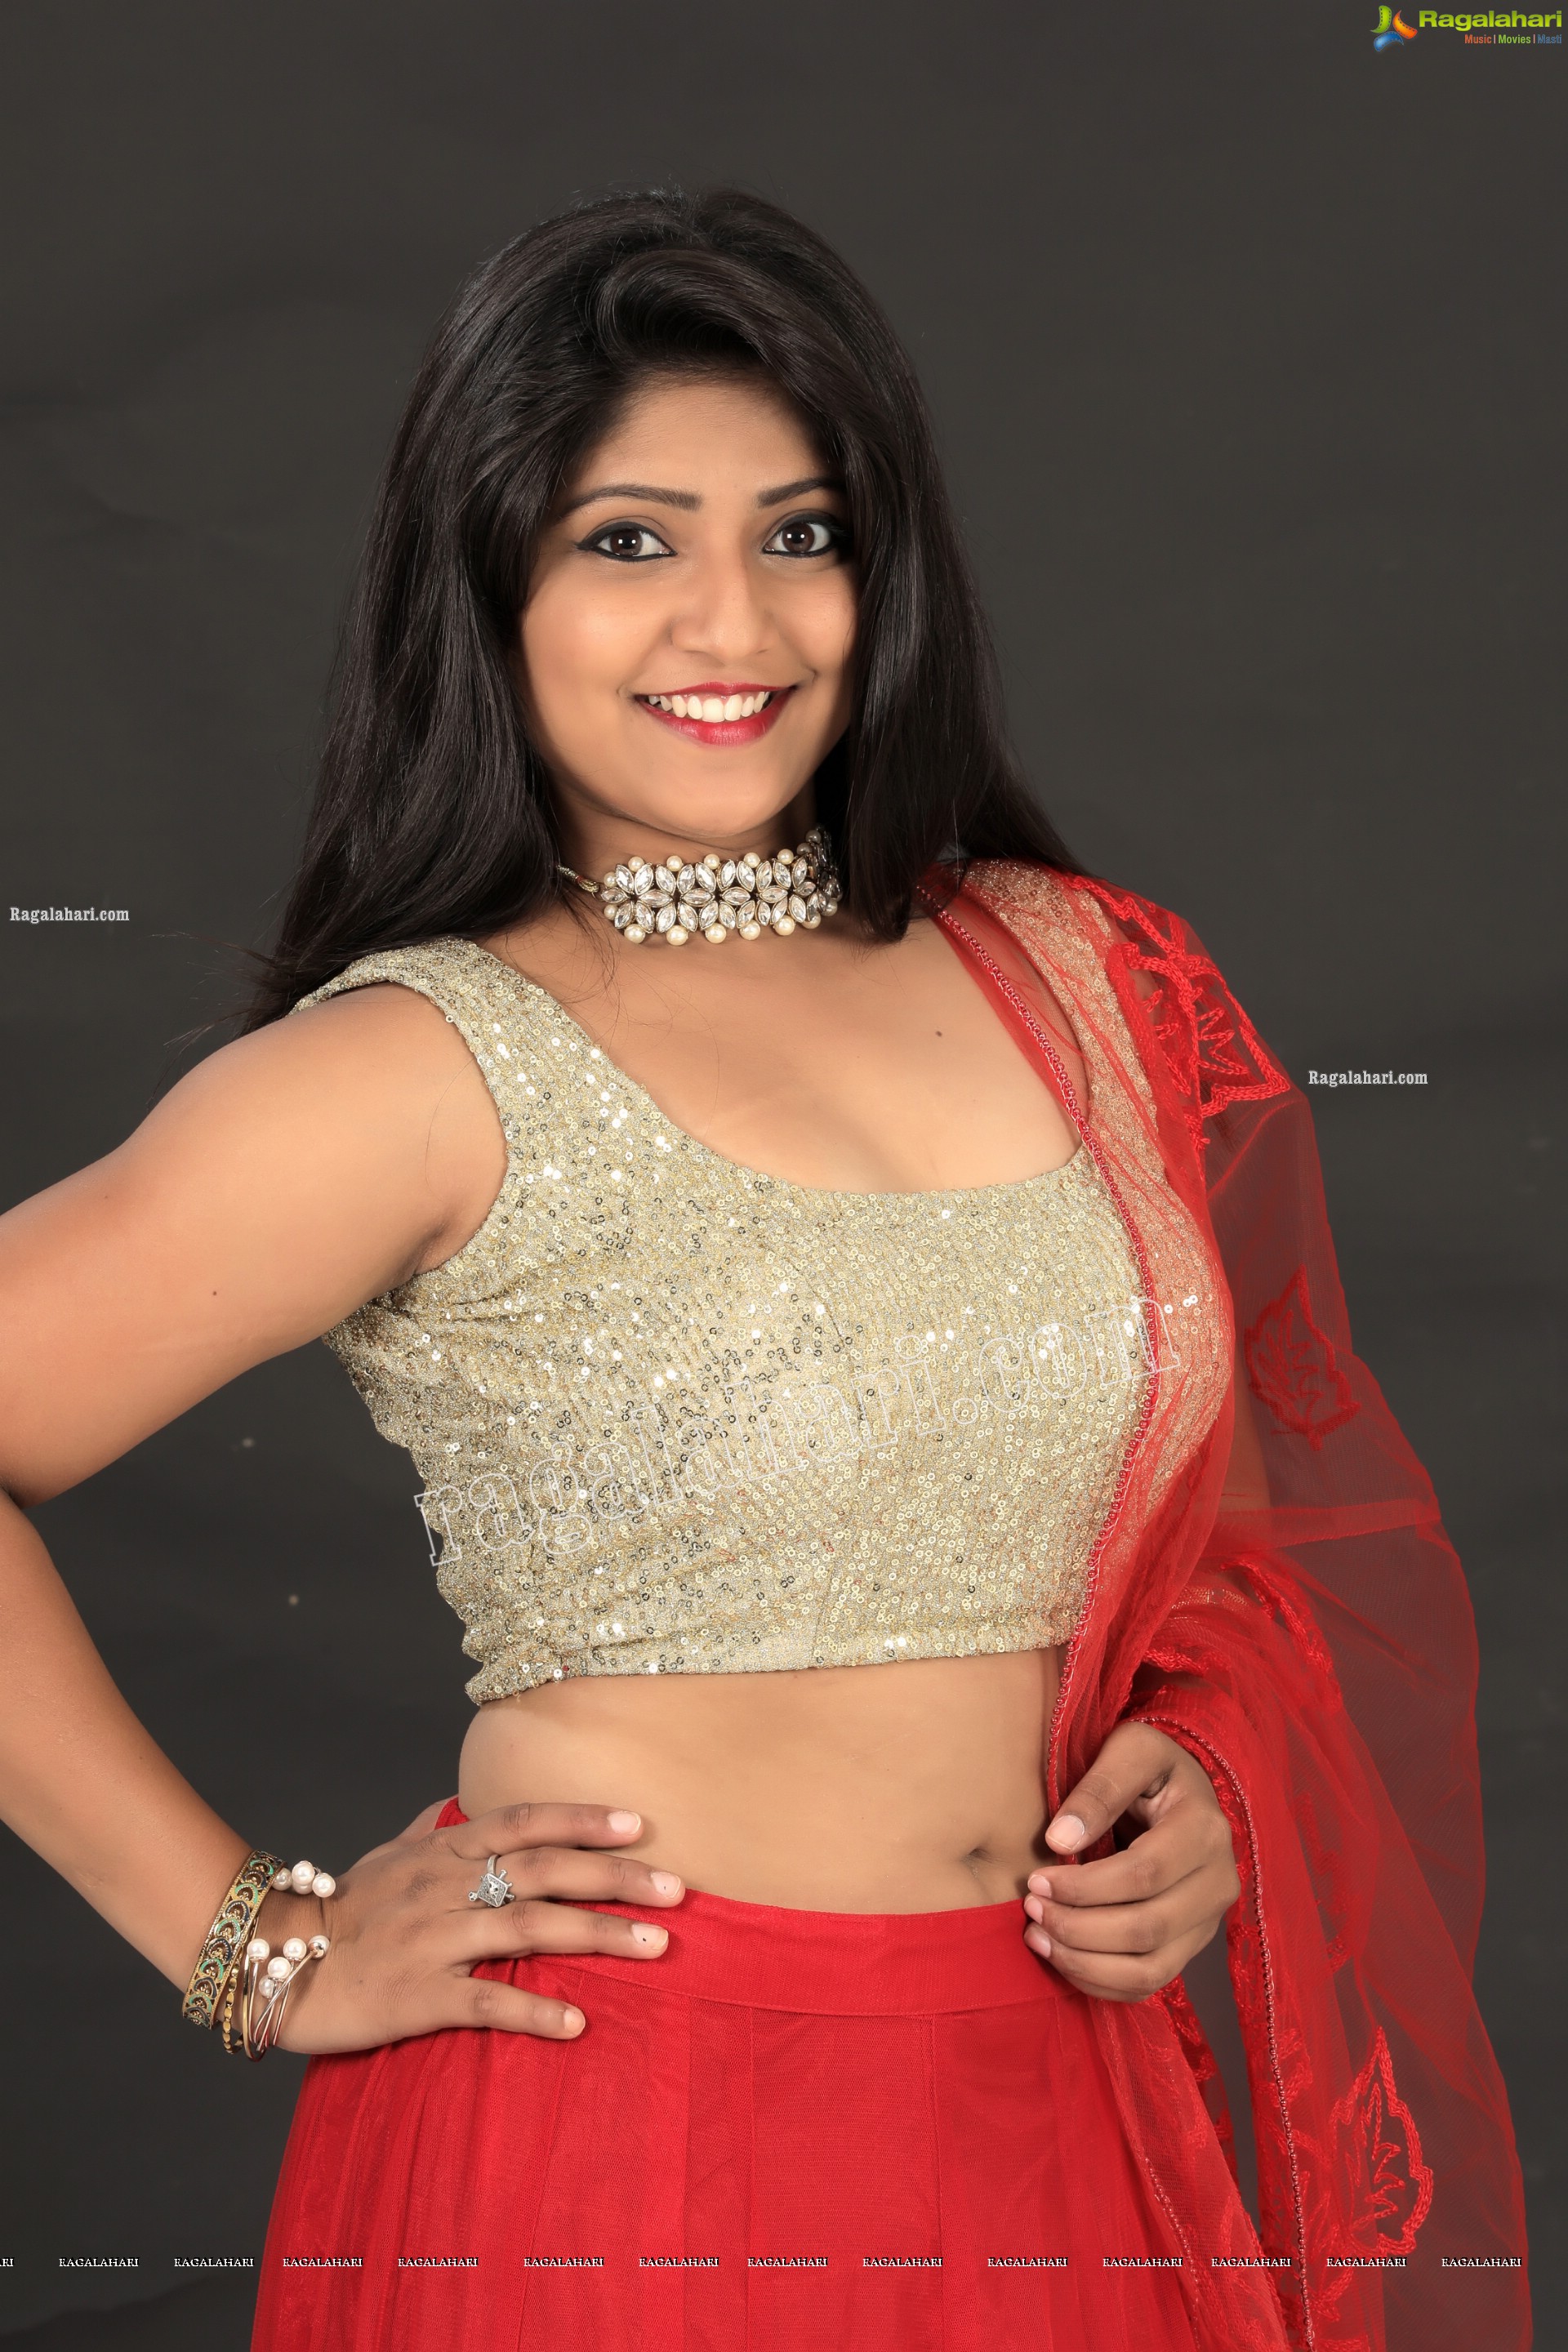 Shabeena Shaik in Red Embellished Lehenga Exclusive Photo Shoot